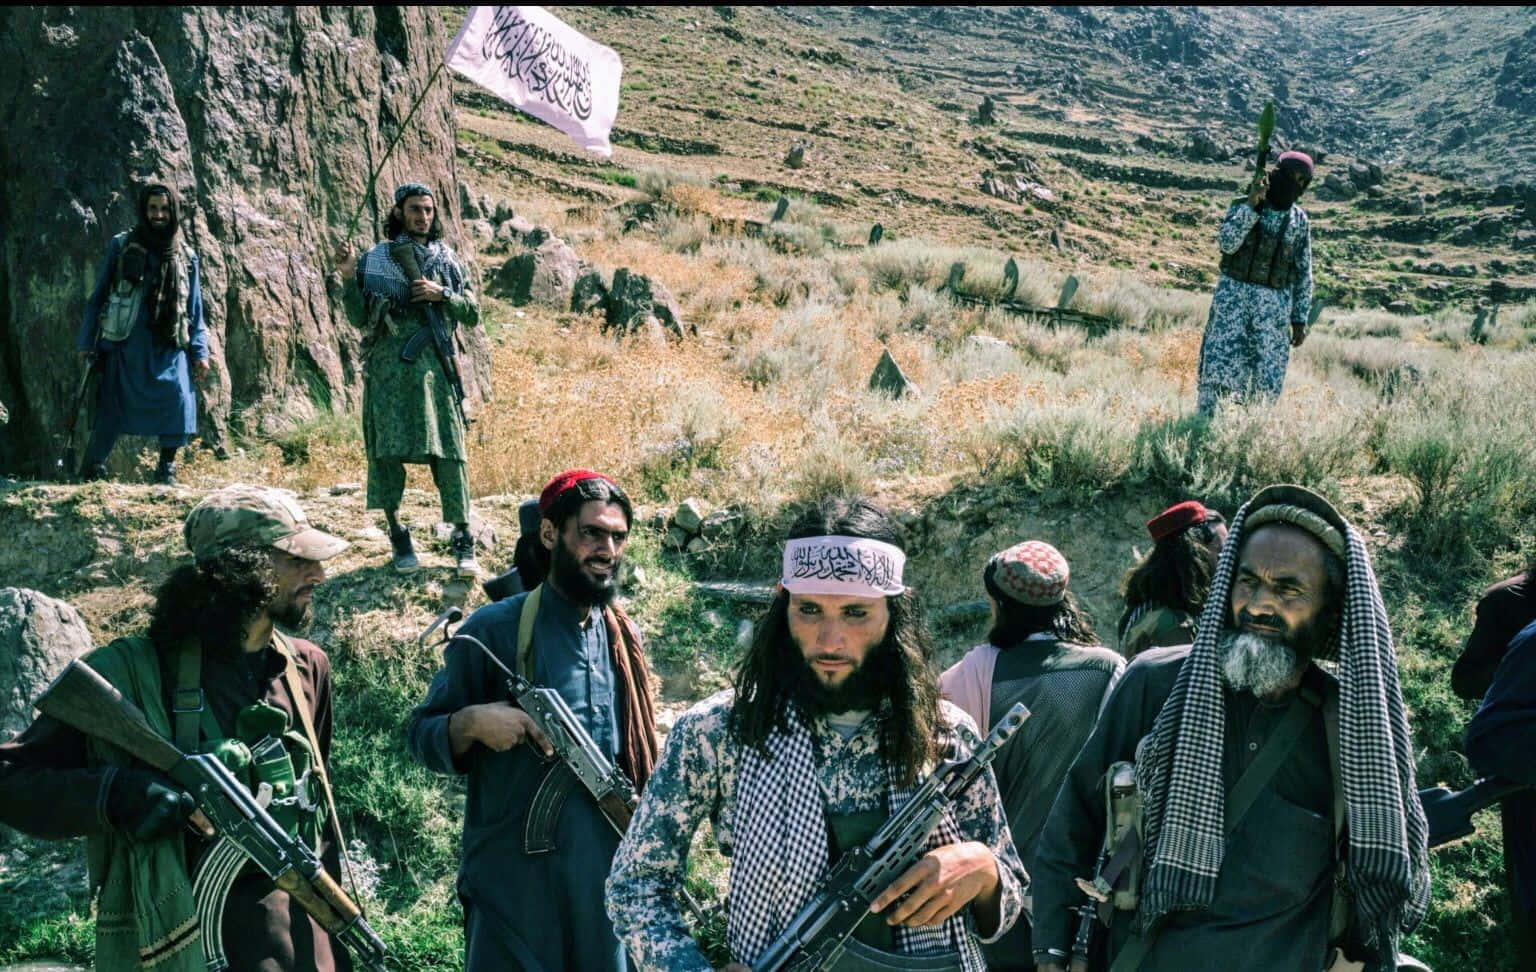 Talibanbild Mit Einer Auflösung Von 1536 X 972